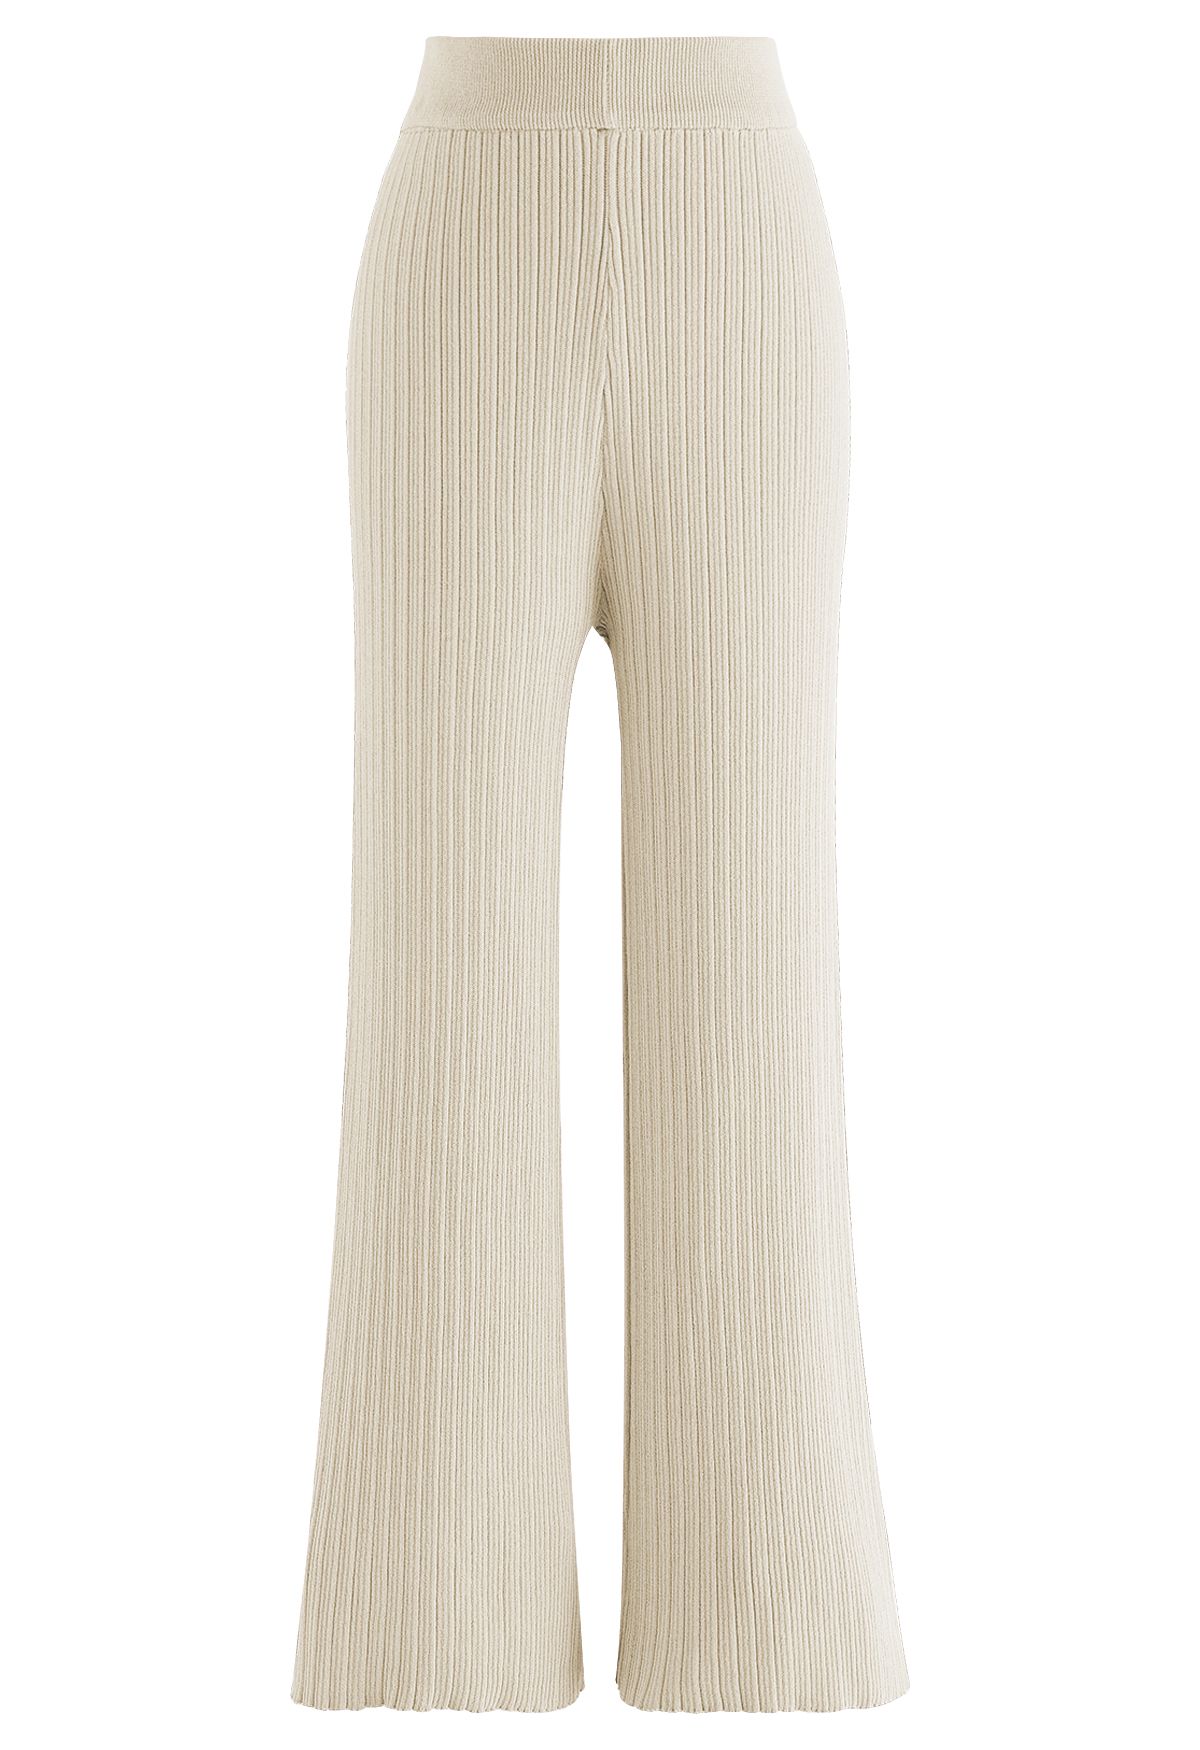 Conjunto de pantalón y top de punto con cordón en la manga en color crema